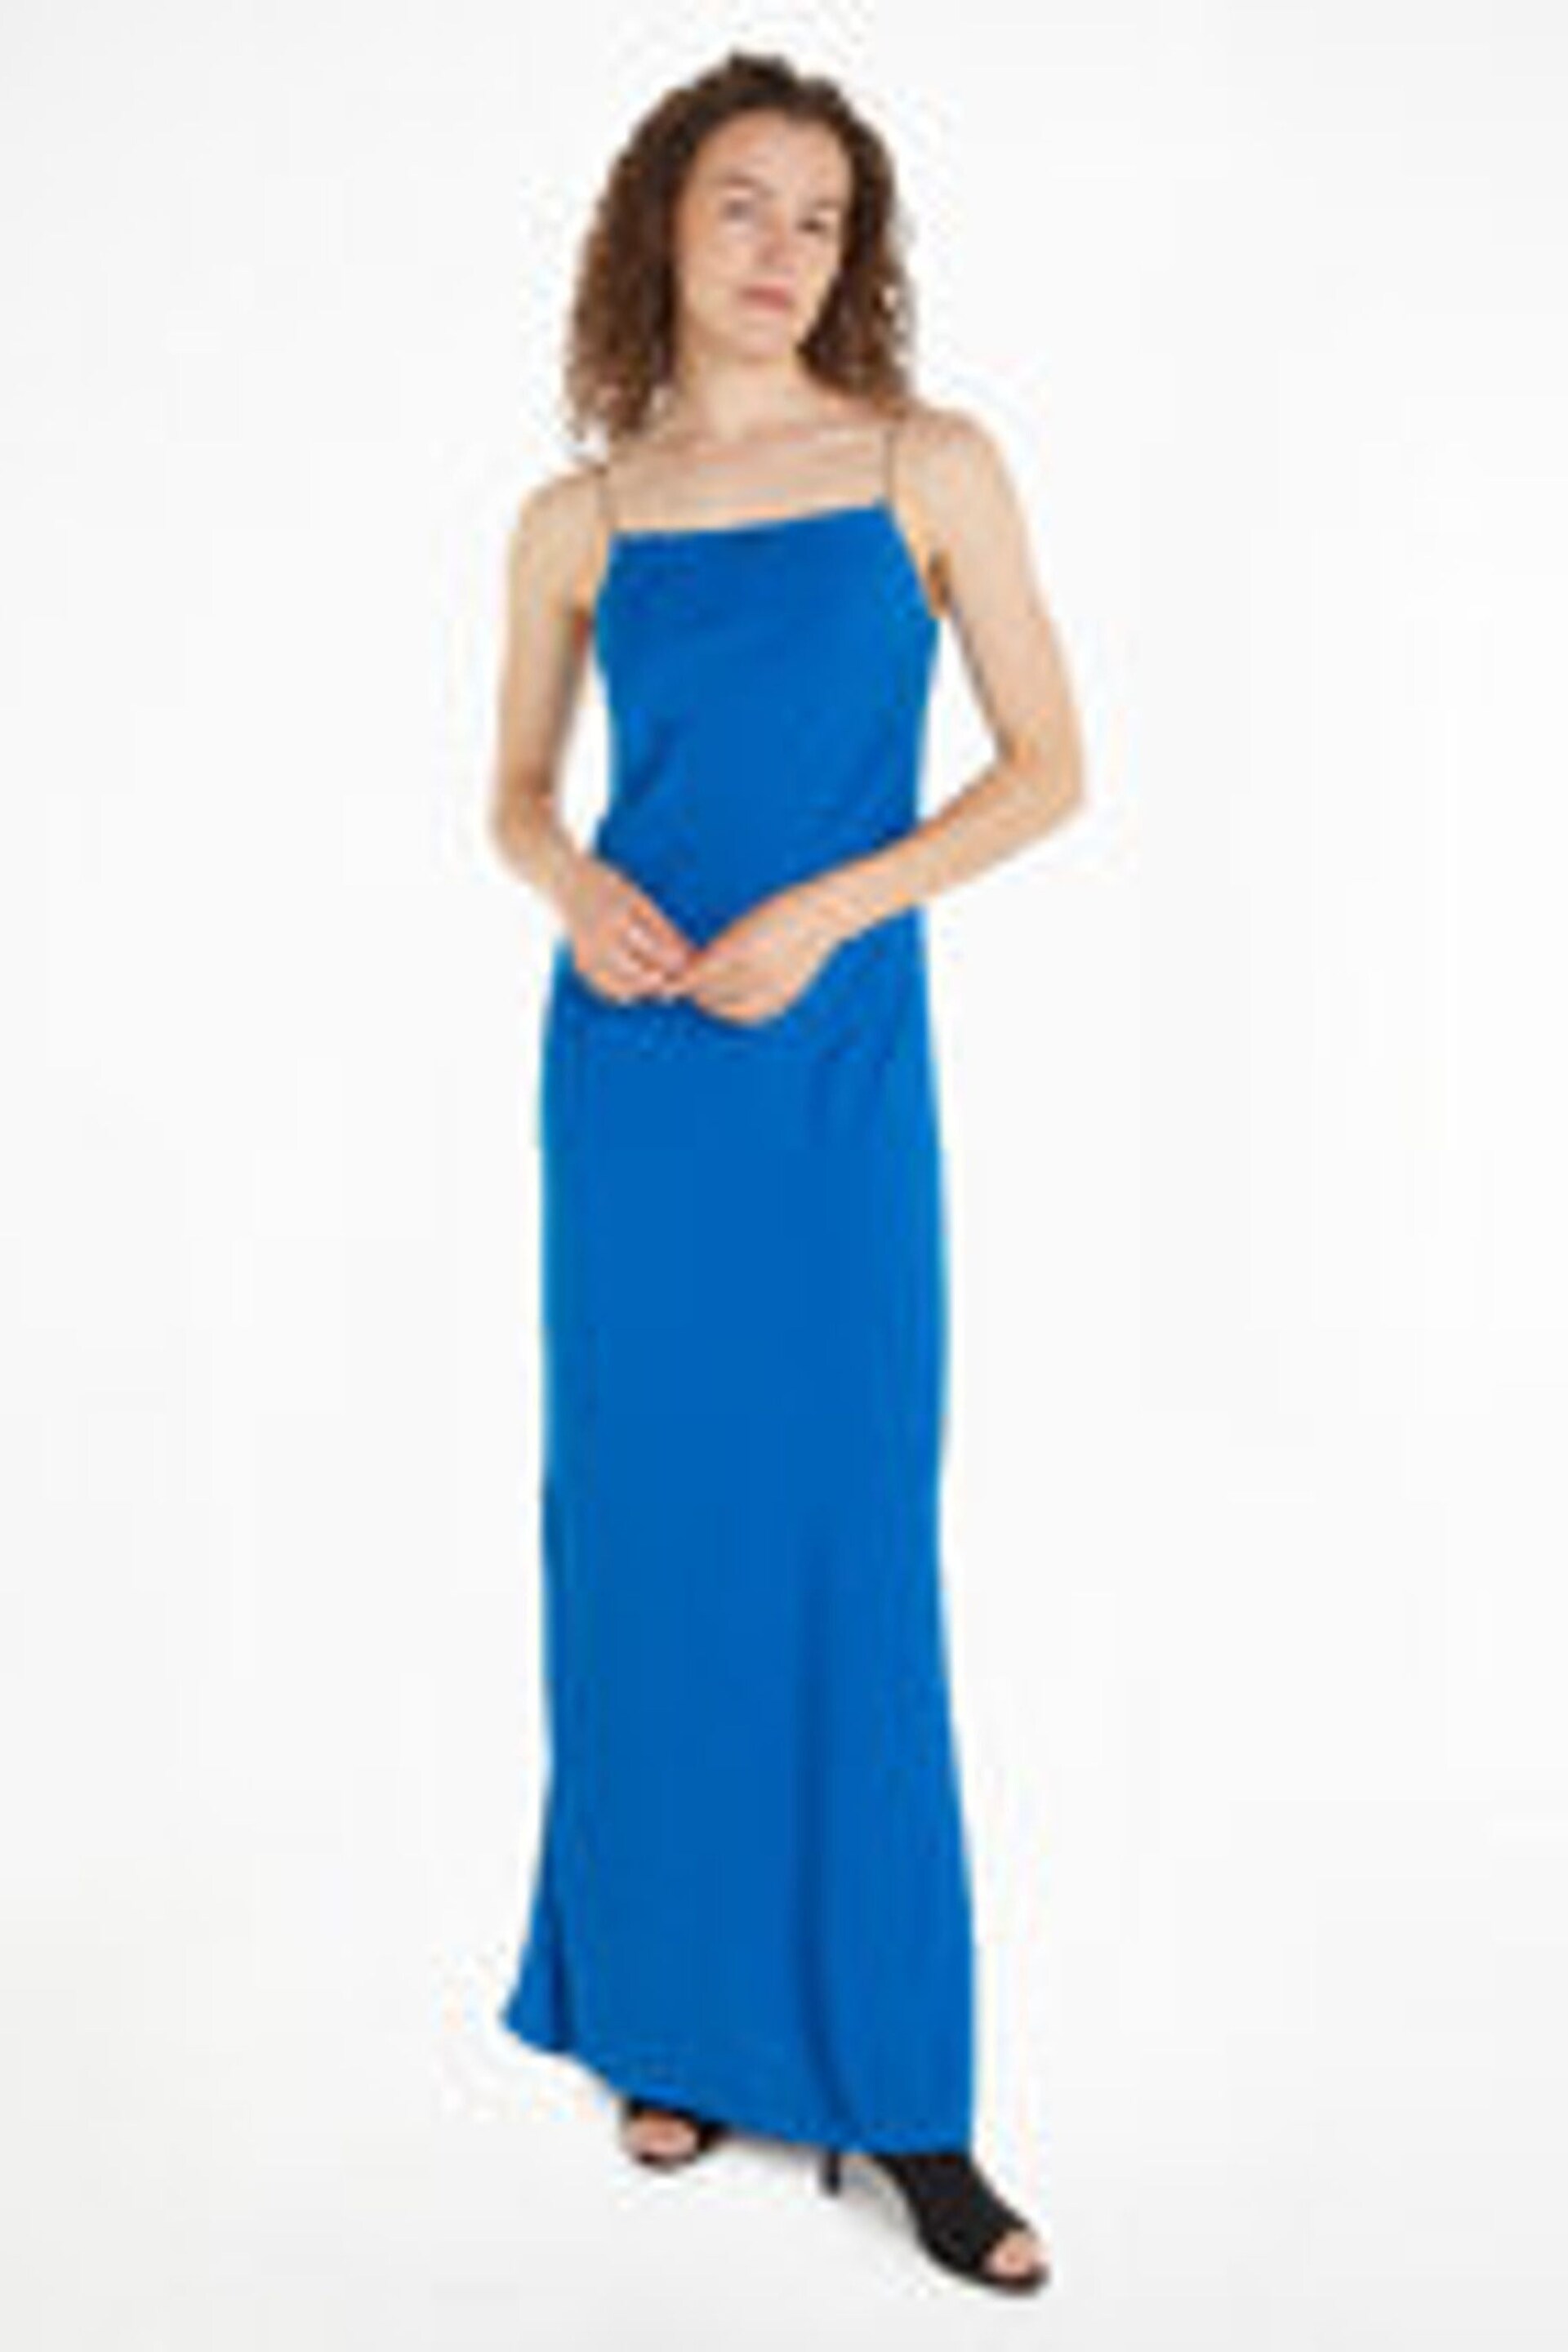 Calvin Klein Blue Metal Detail Slip Dress - Image 1 of 3